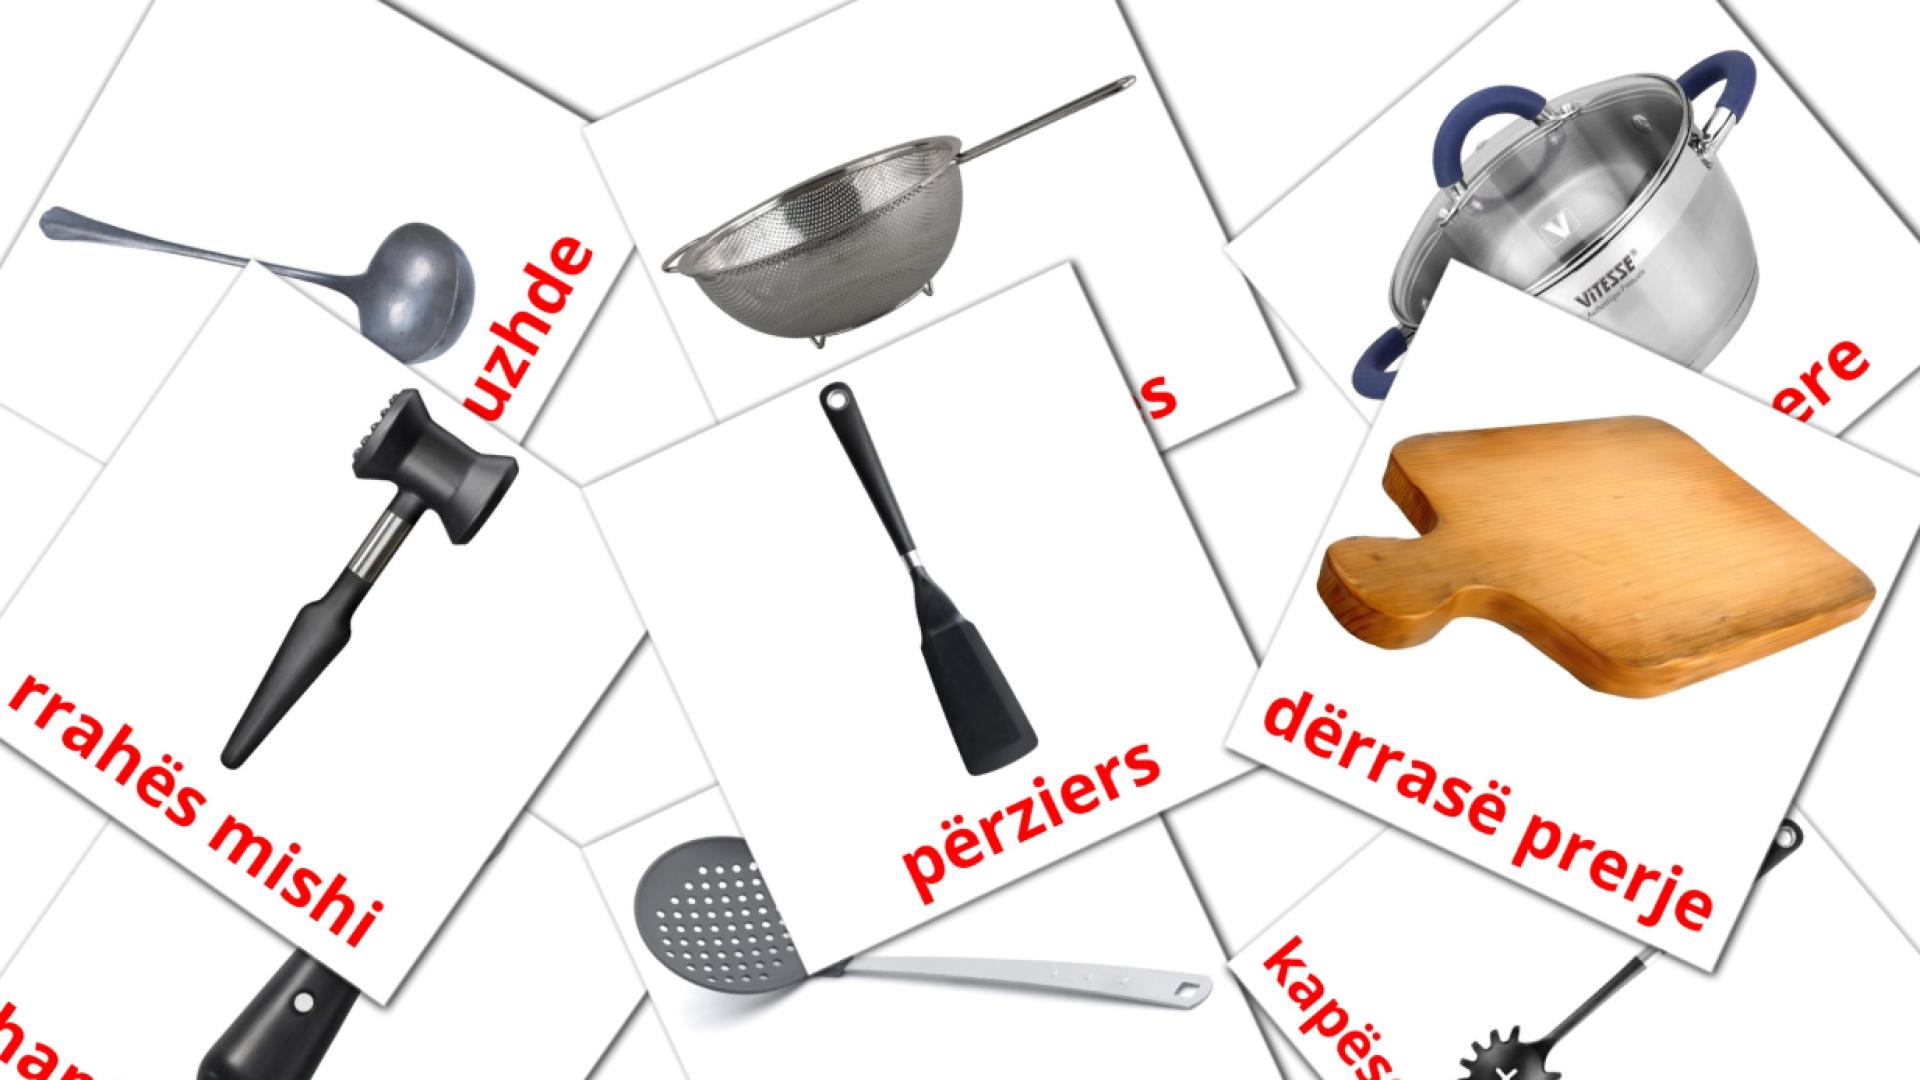 Utensílios de cozinha - Cartões de vocabulário albanês